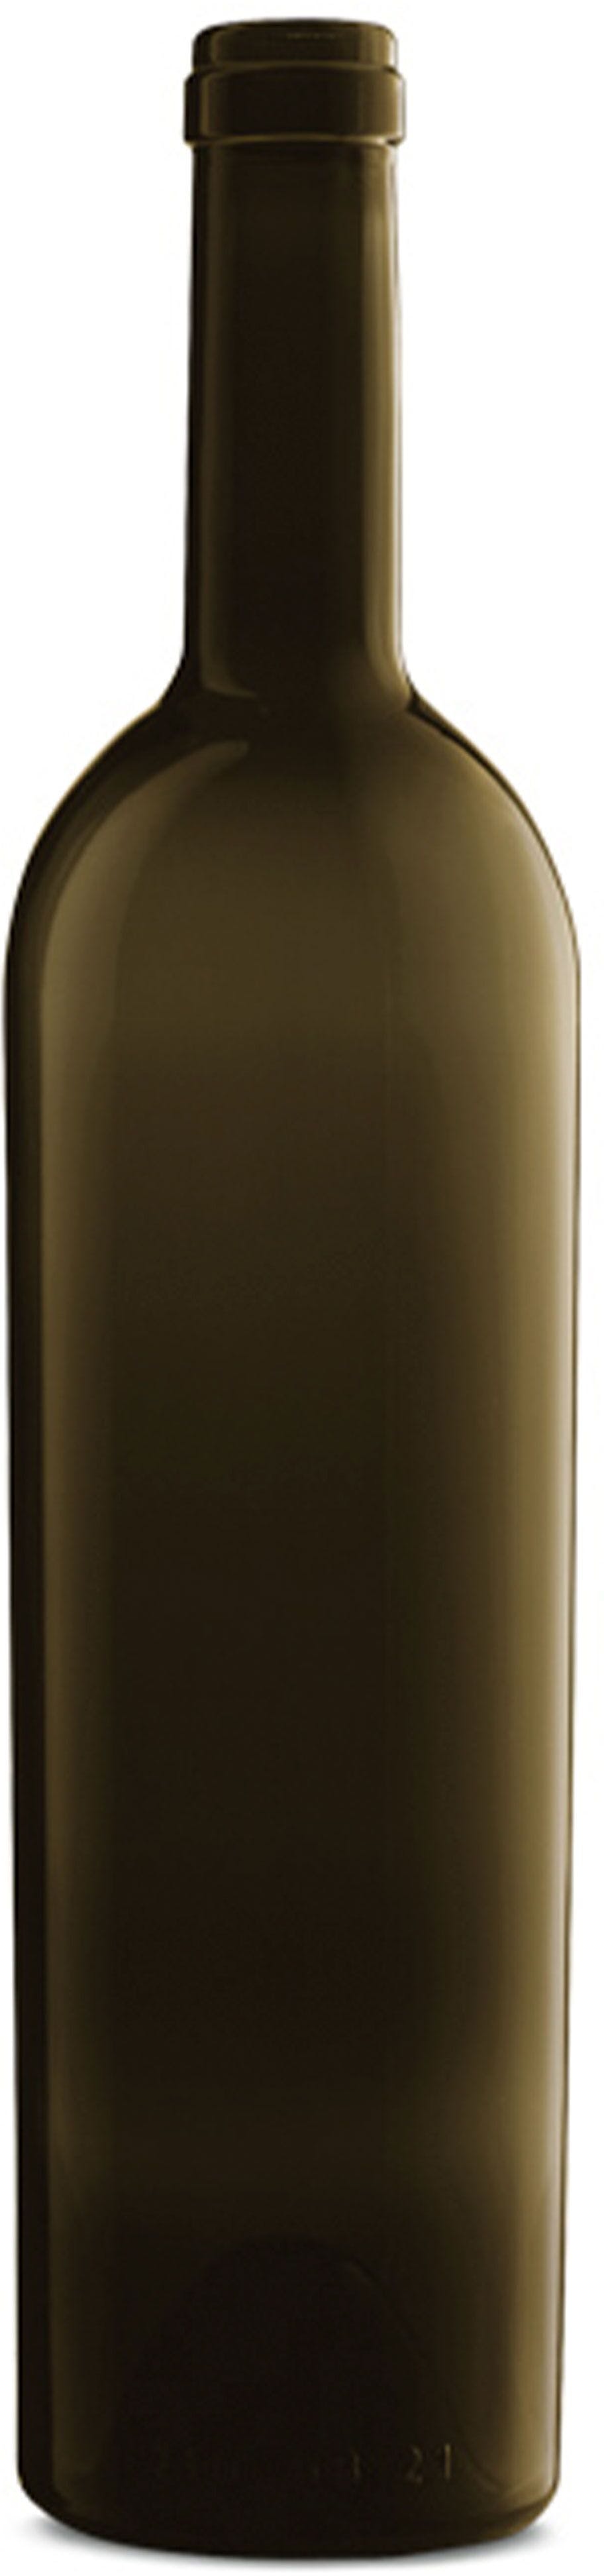 Bottiglia bordolese   ELITE 750 ml BG-Sughero